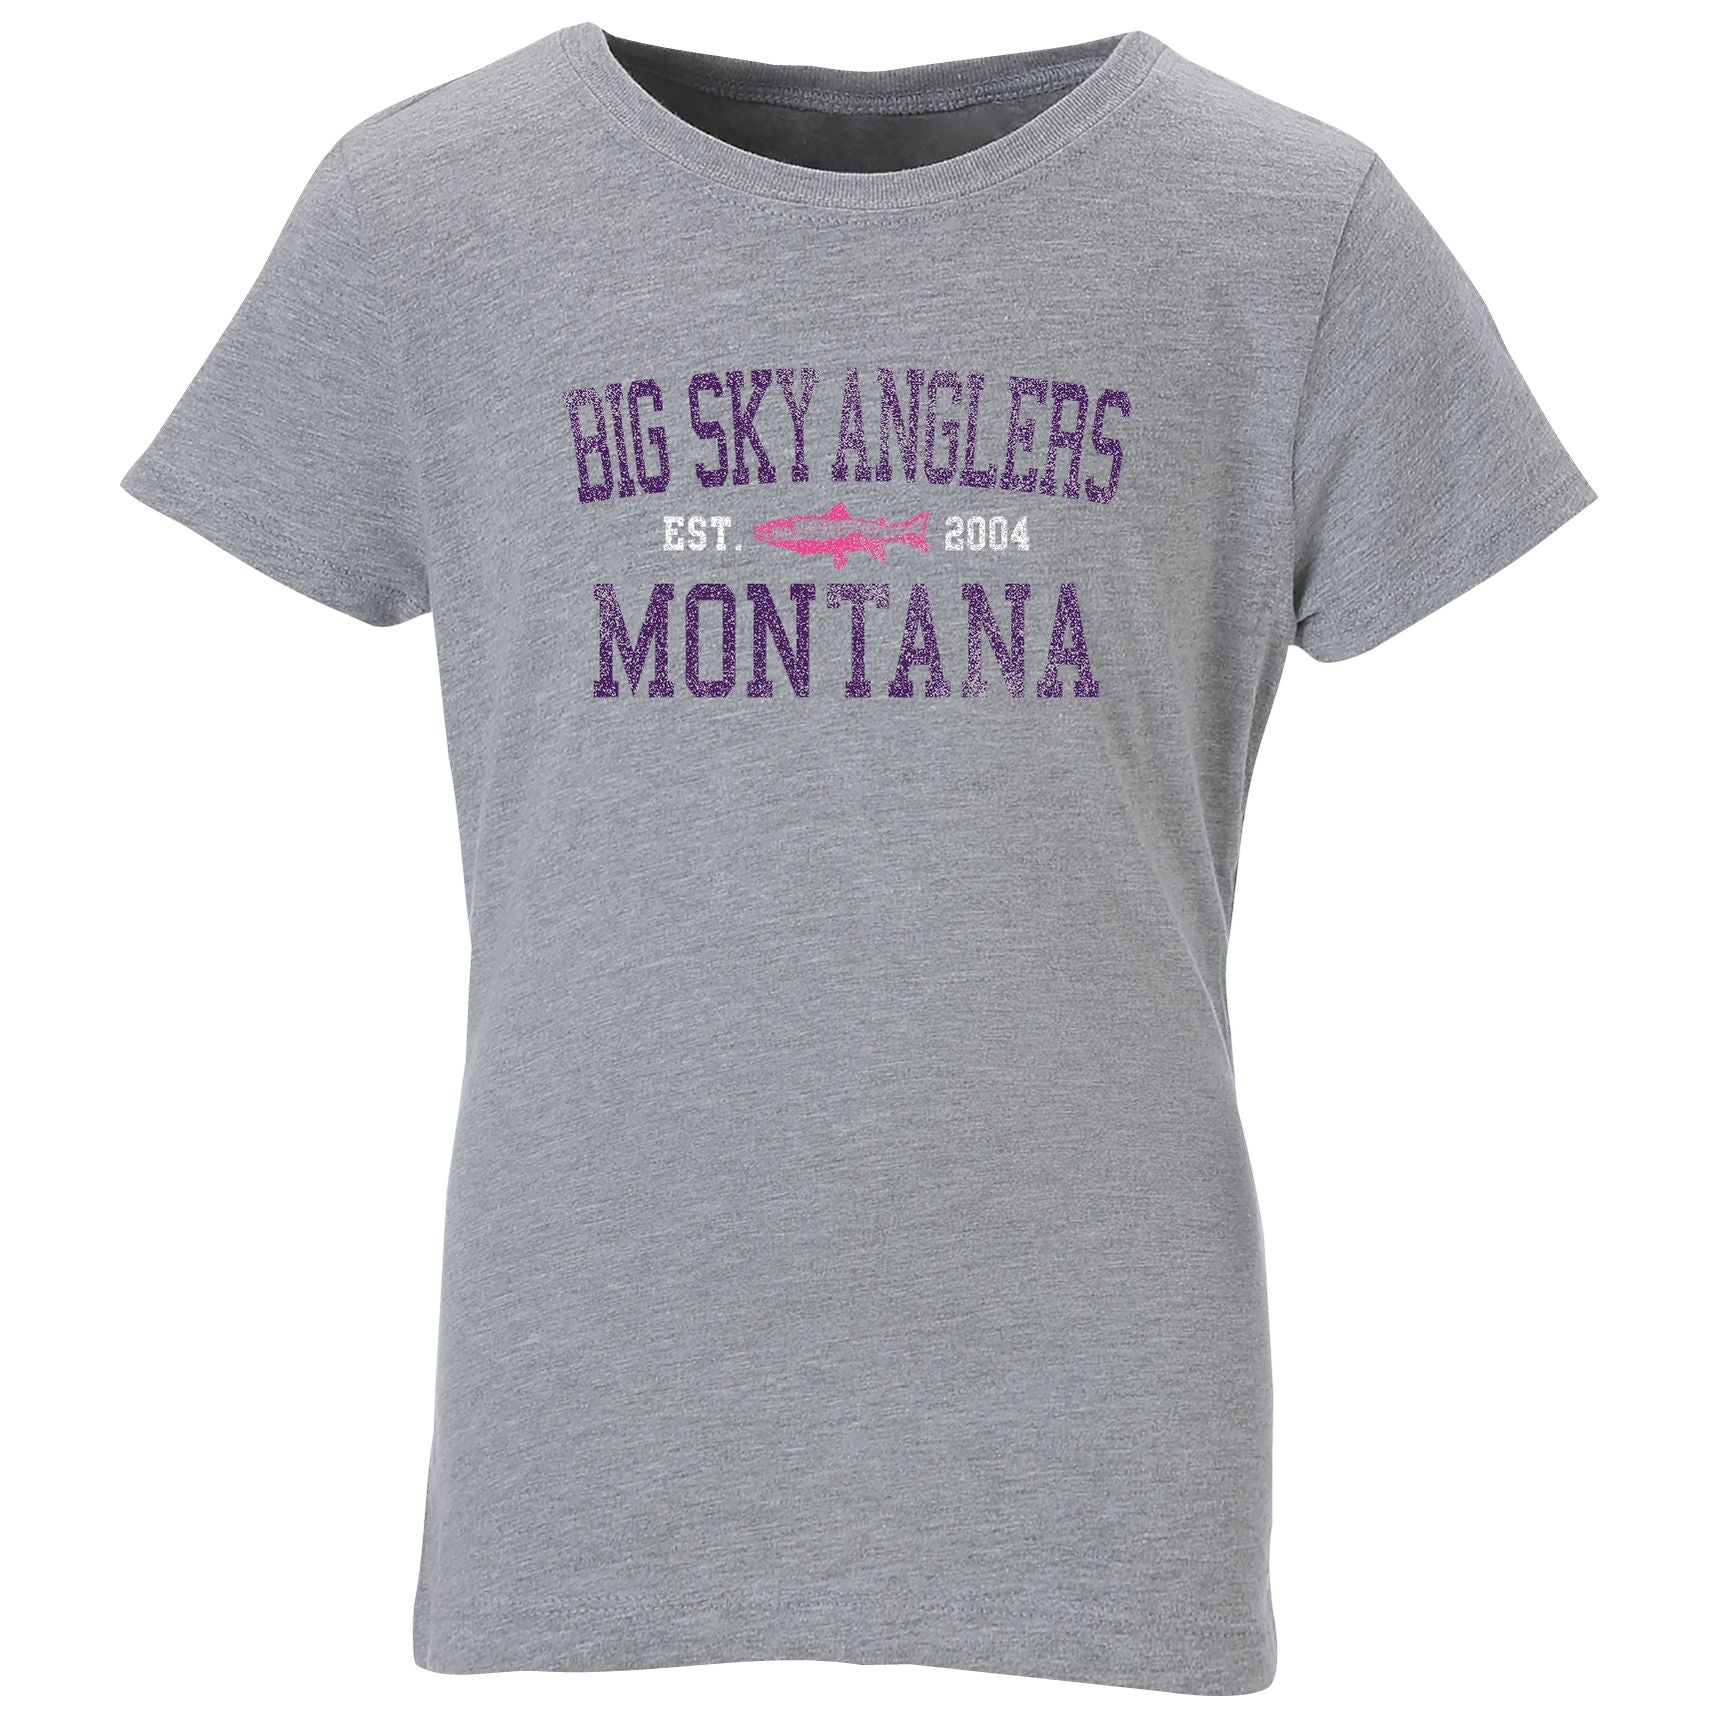 Montana Shirt, Fishing Shirt, Big Fish Shirt, Montana Tshirt, Montana Gift,  Shirt for Men, Camping Shirt, Camping Tshirt, Montana Vacation